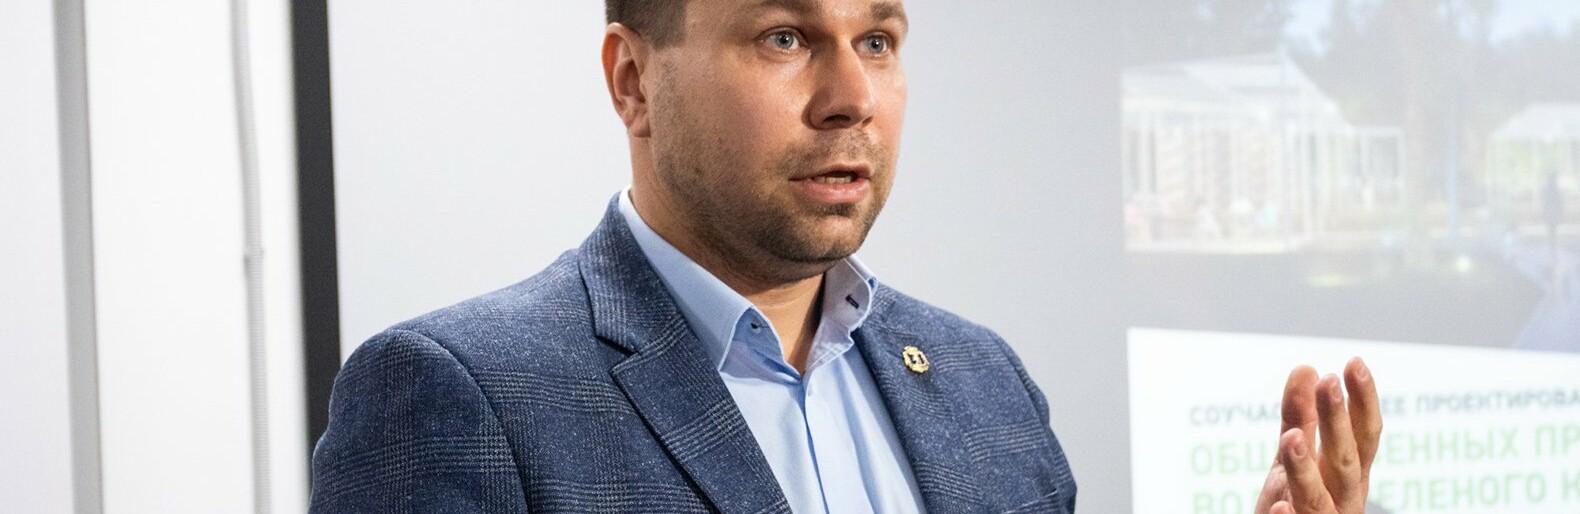 Губернатор объяснил уход мэра Белгорода медлительностью